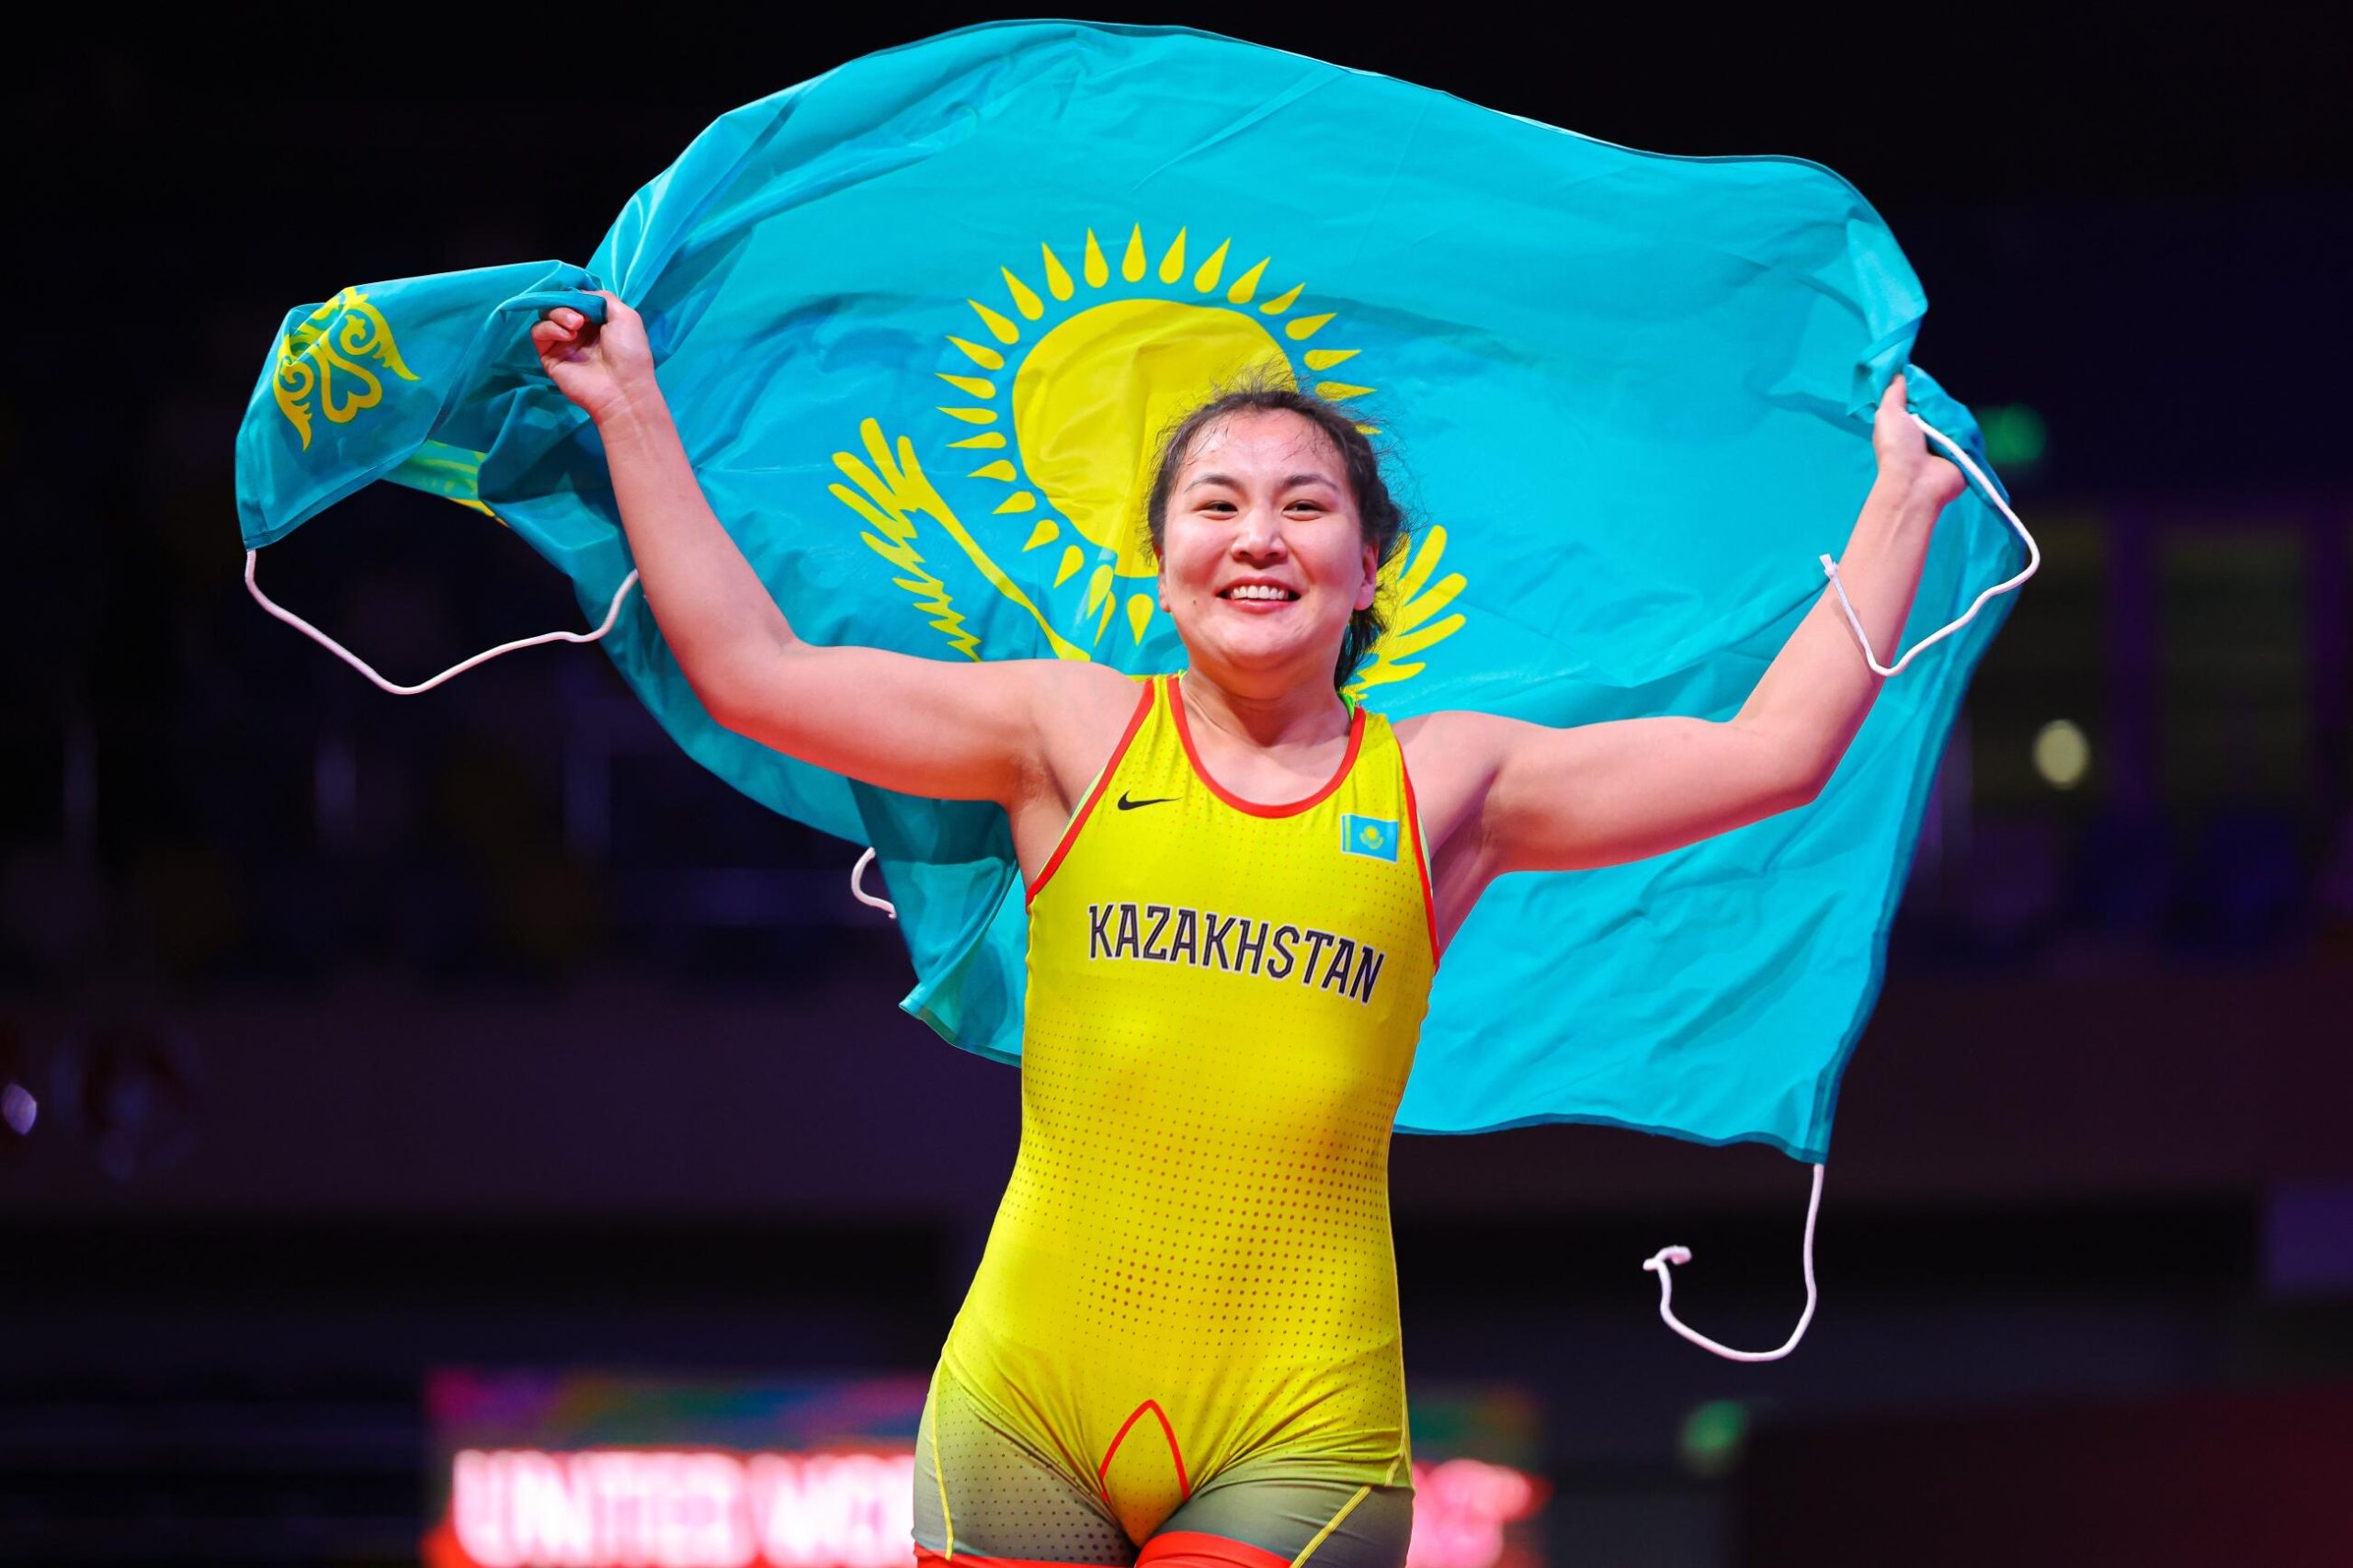 Kazakh Female Wrestler Wins Gold at Asian Wrestling Championship The